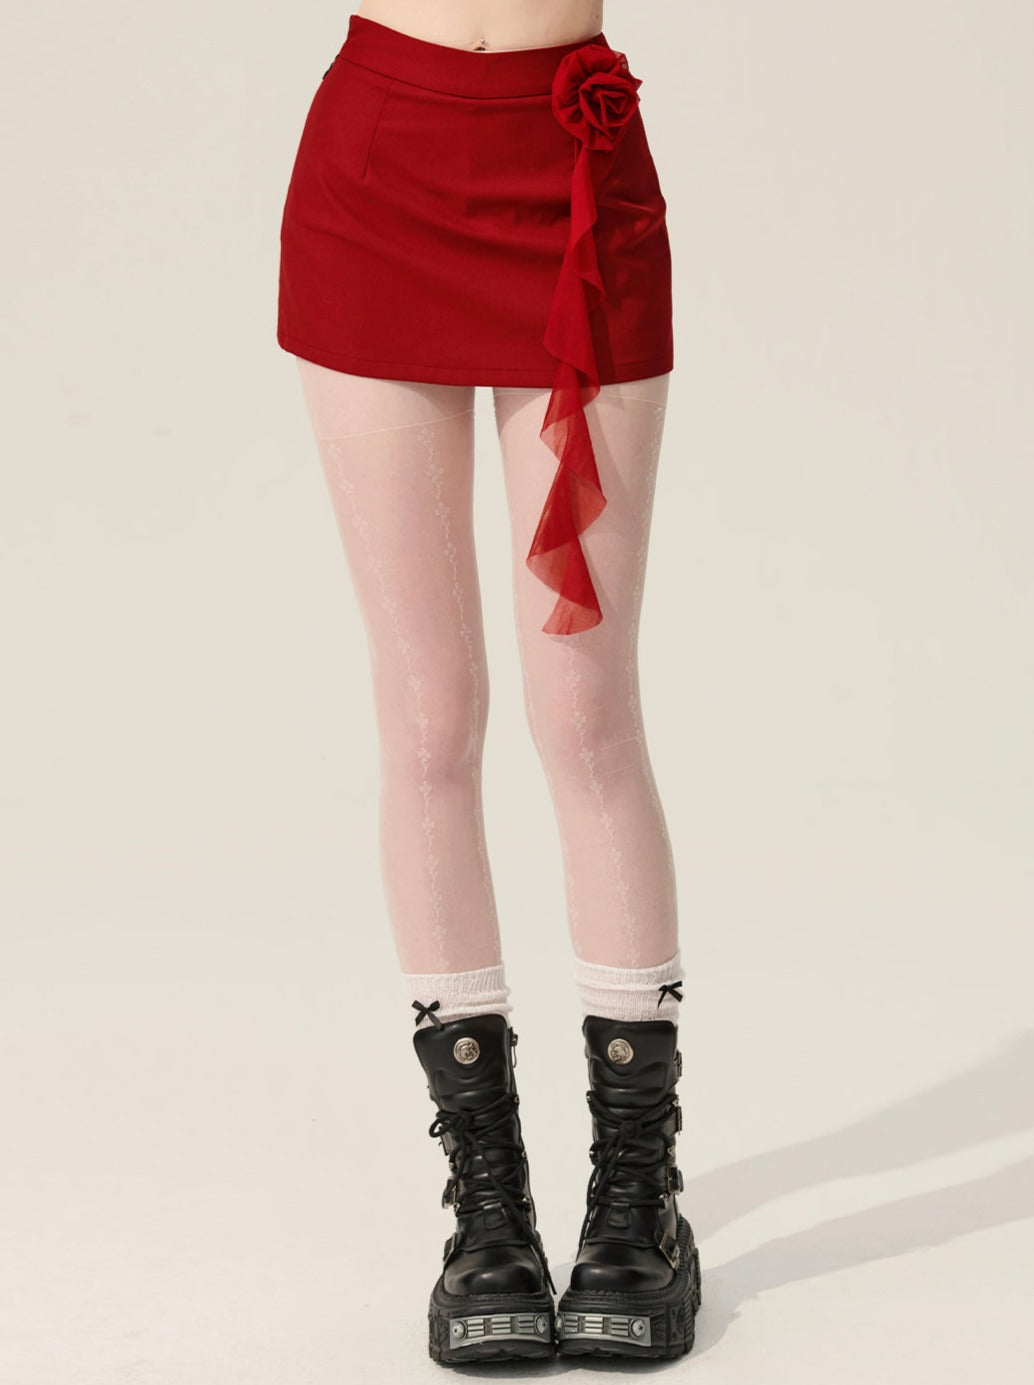 Red Rose Hot Girl Short Skirt